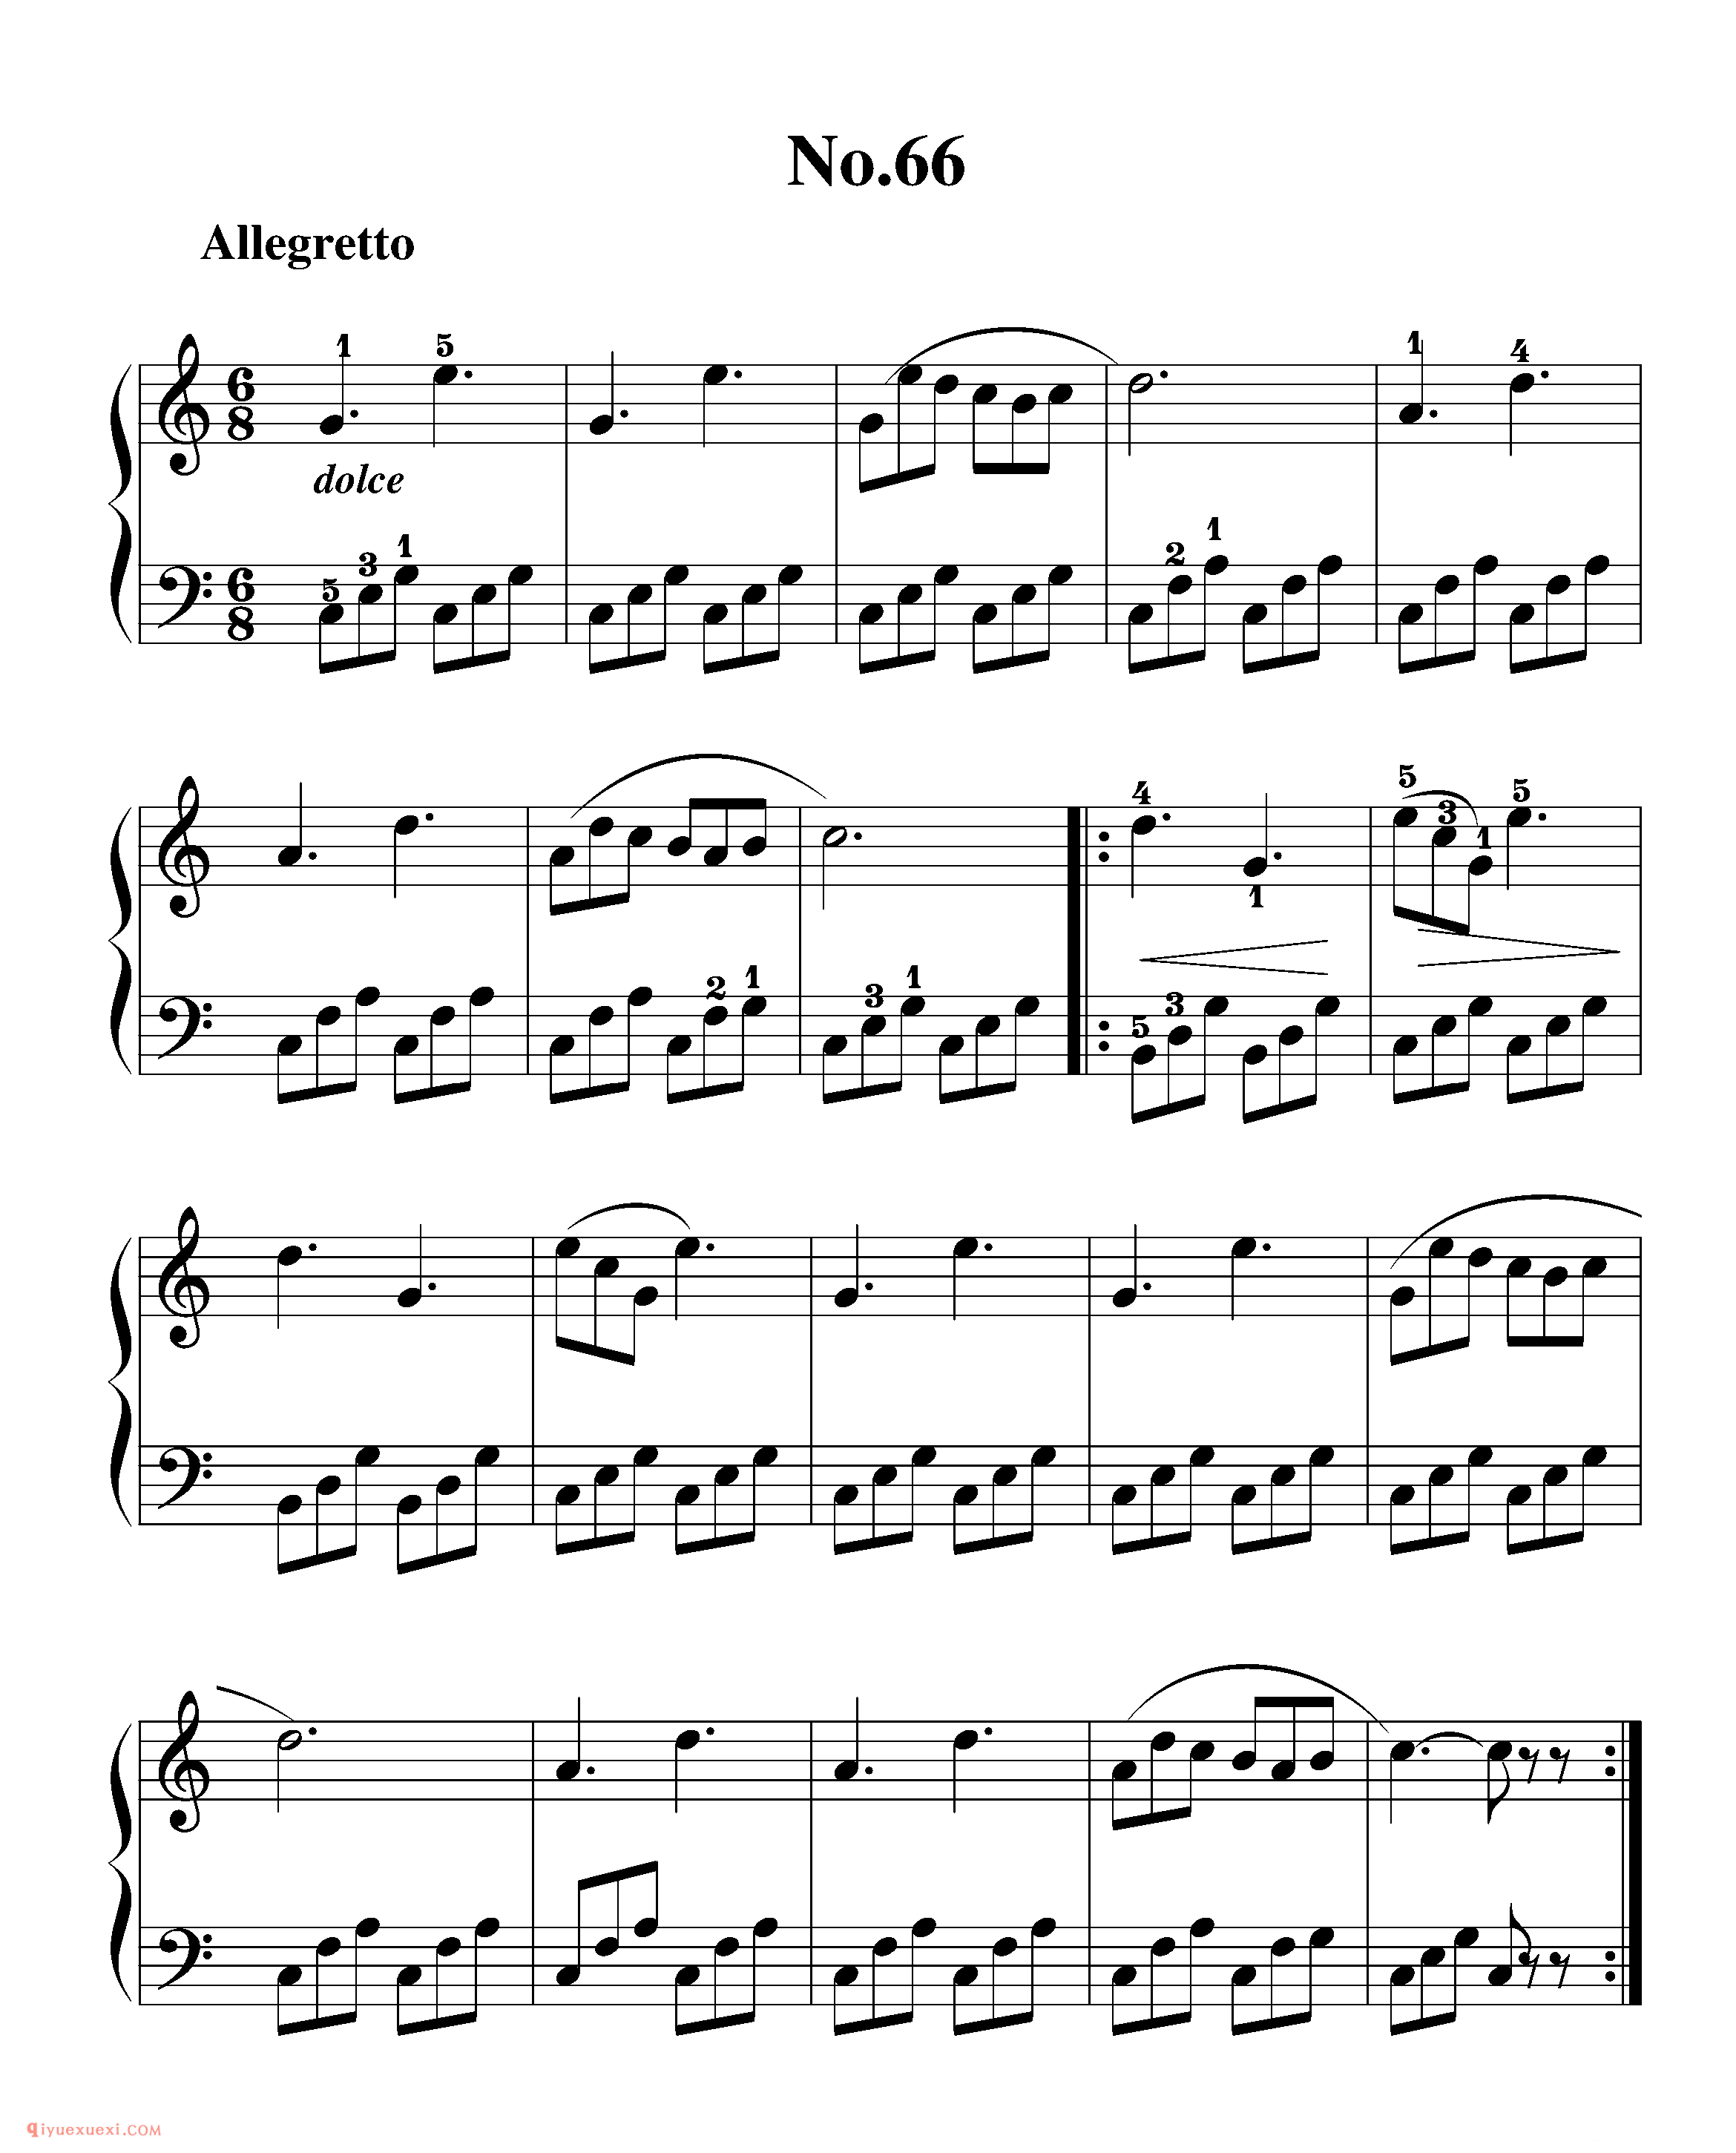 拜厄钢琴练习曲NO.66_拜尔(拜厄)钢琴基本教程练习曲第66首_五线谱